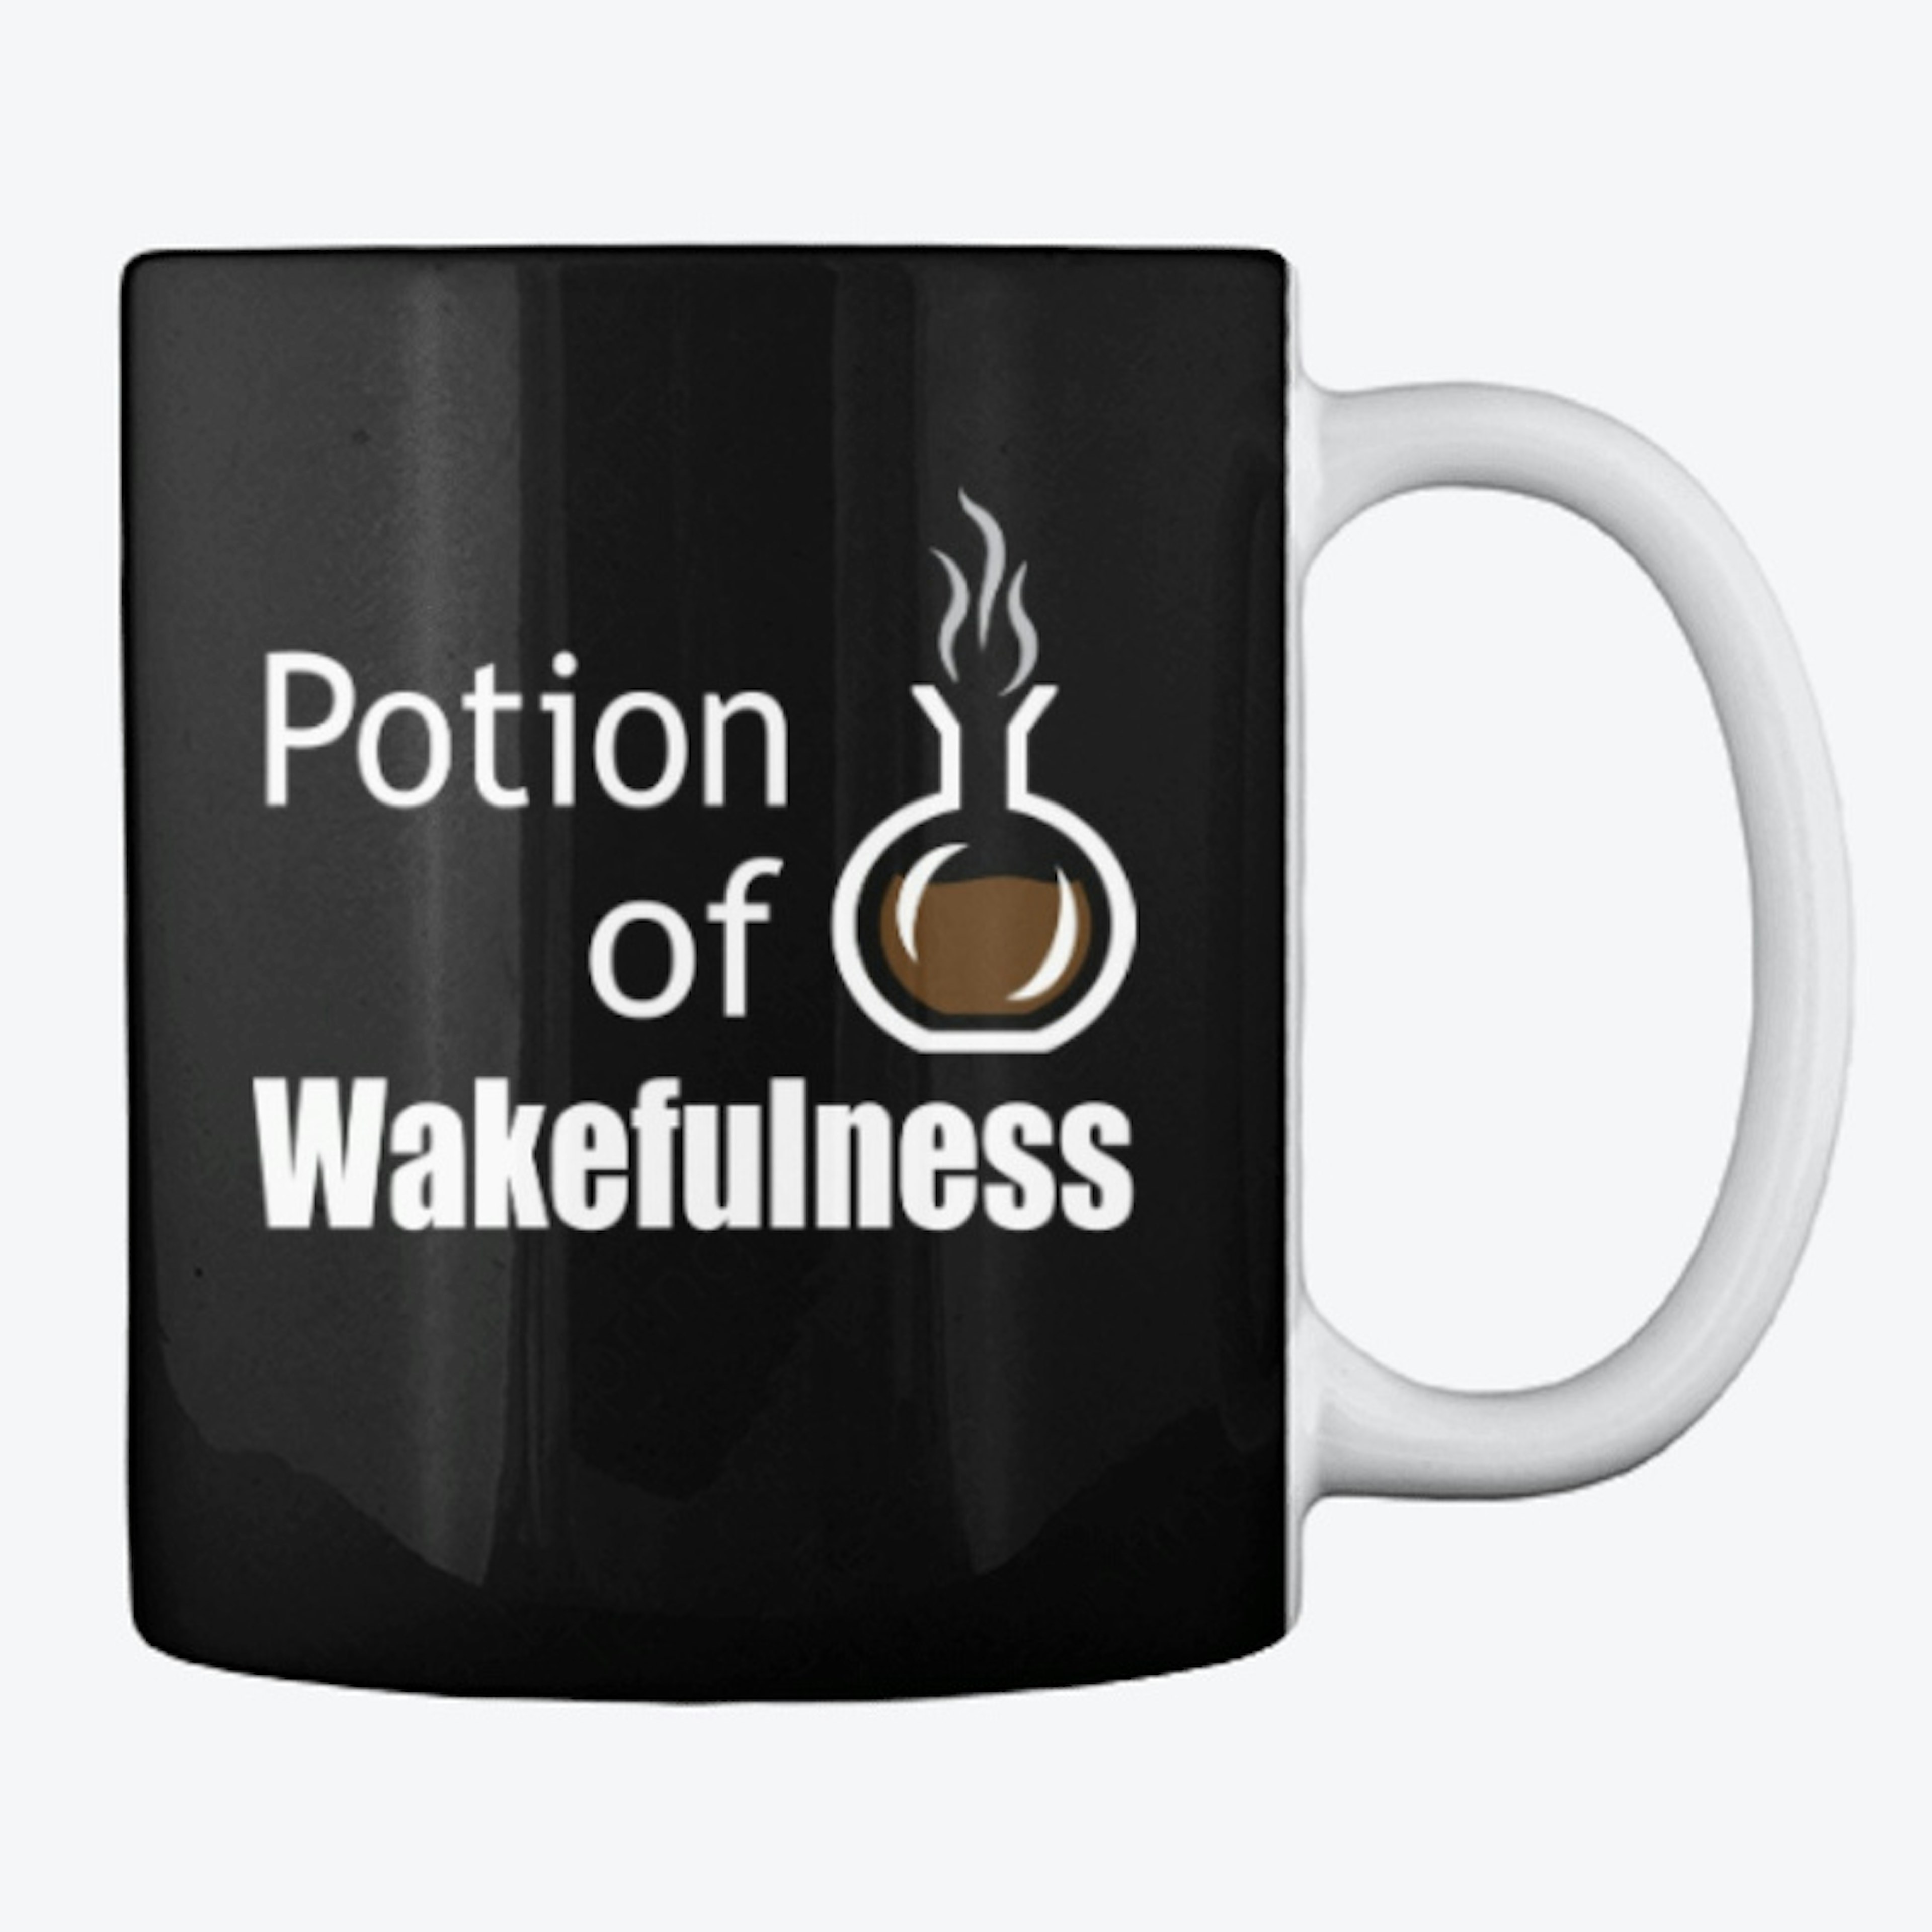 Potion of Wakefulness Mug